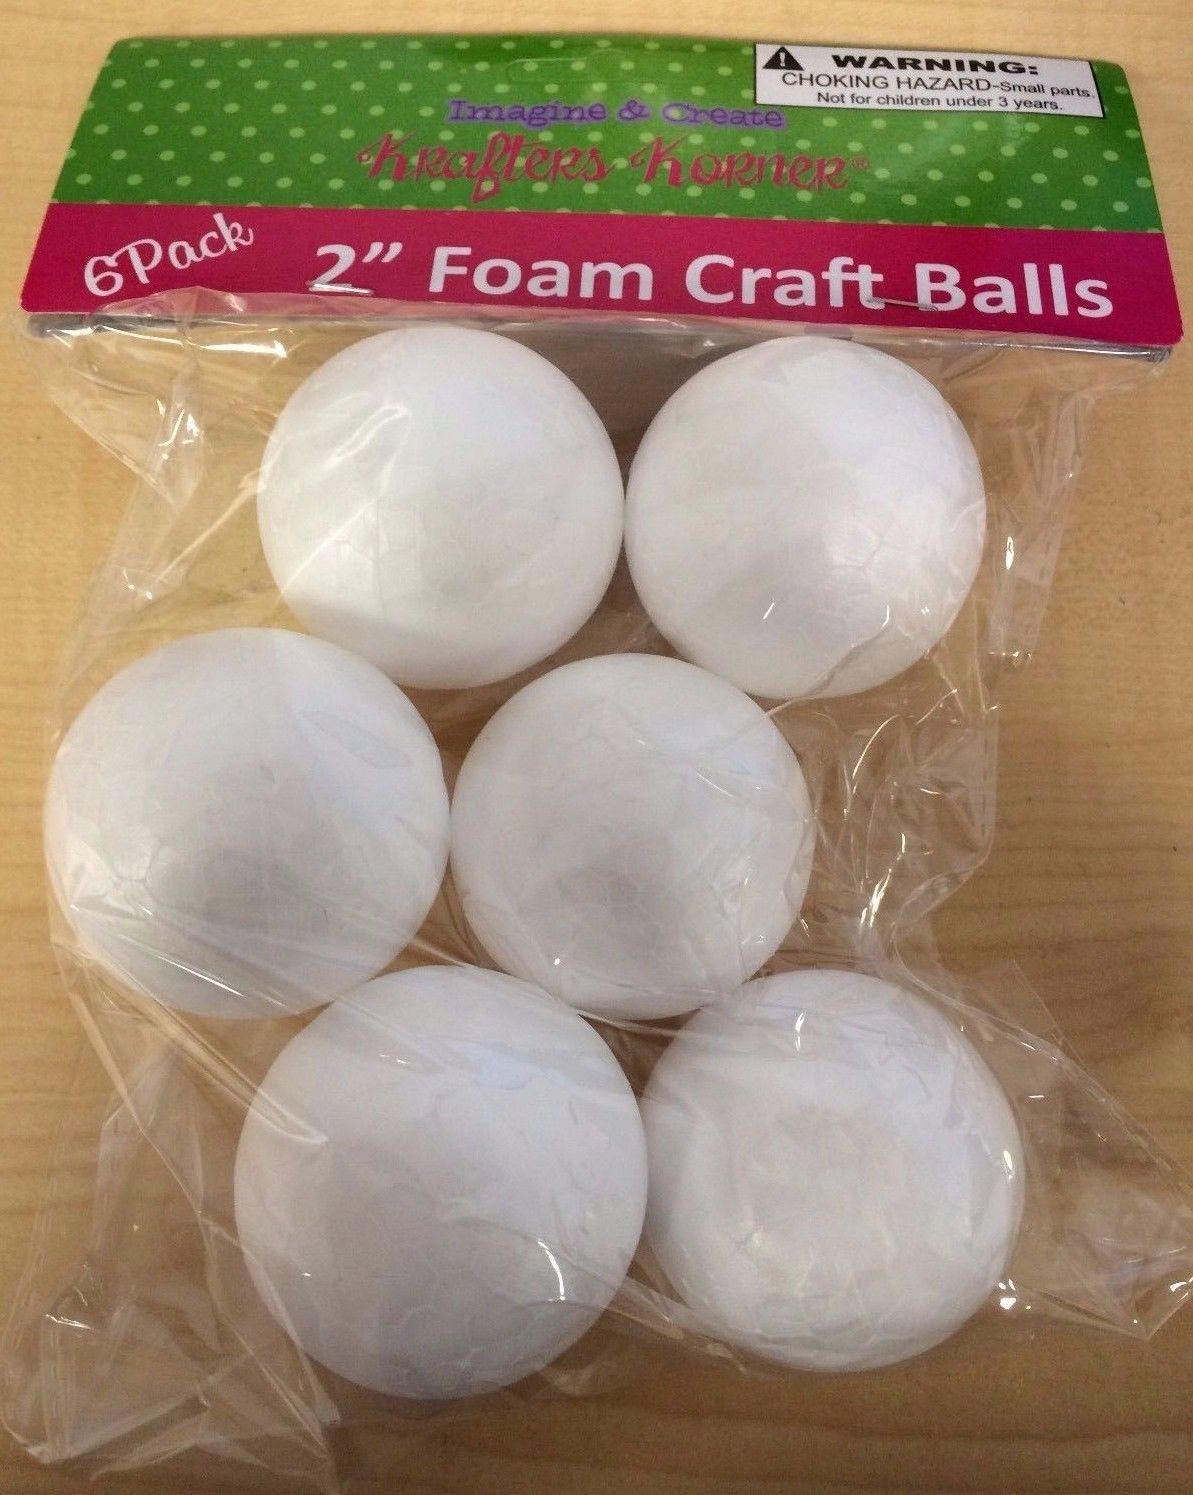 2X 6 Pack 2'' Foam Craft Balls (12 balls)